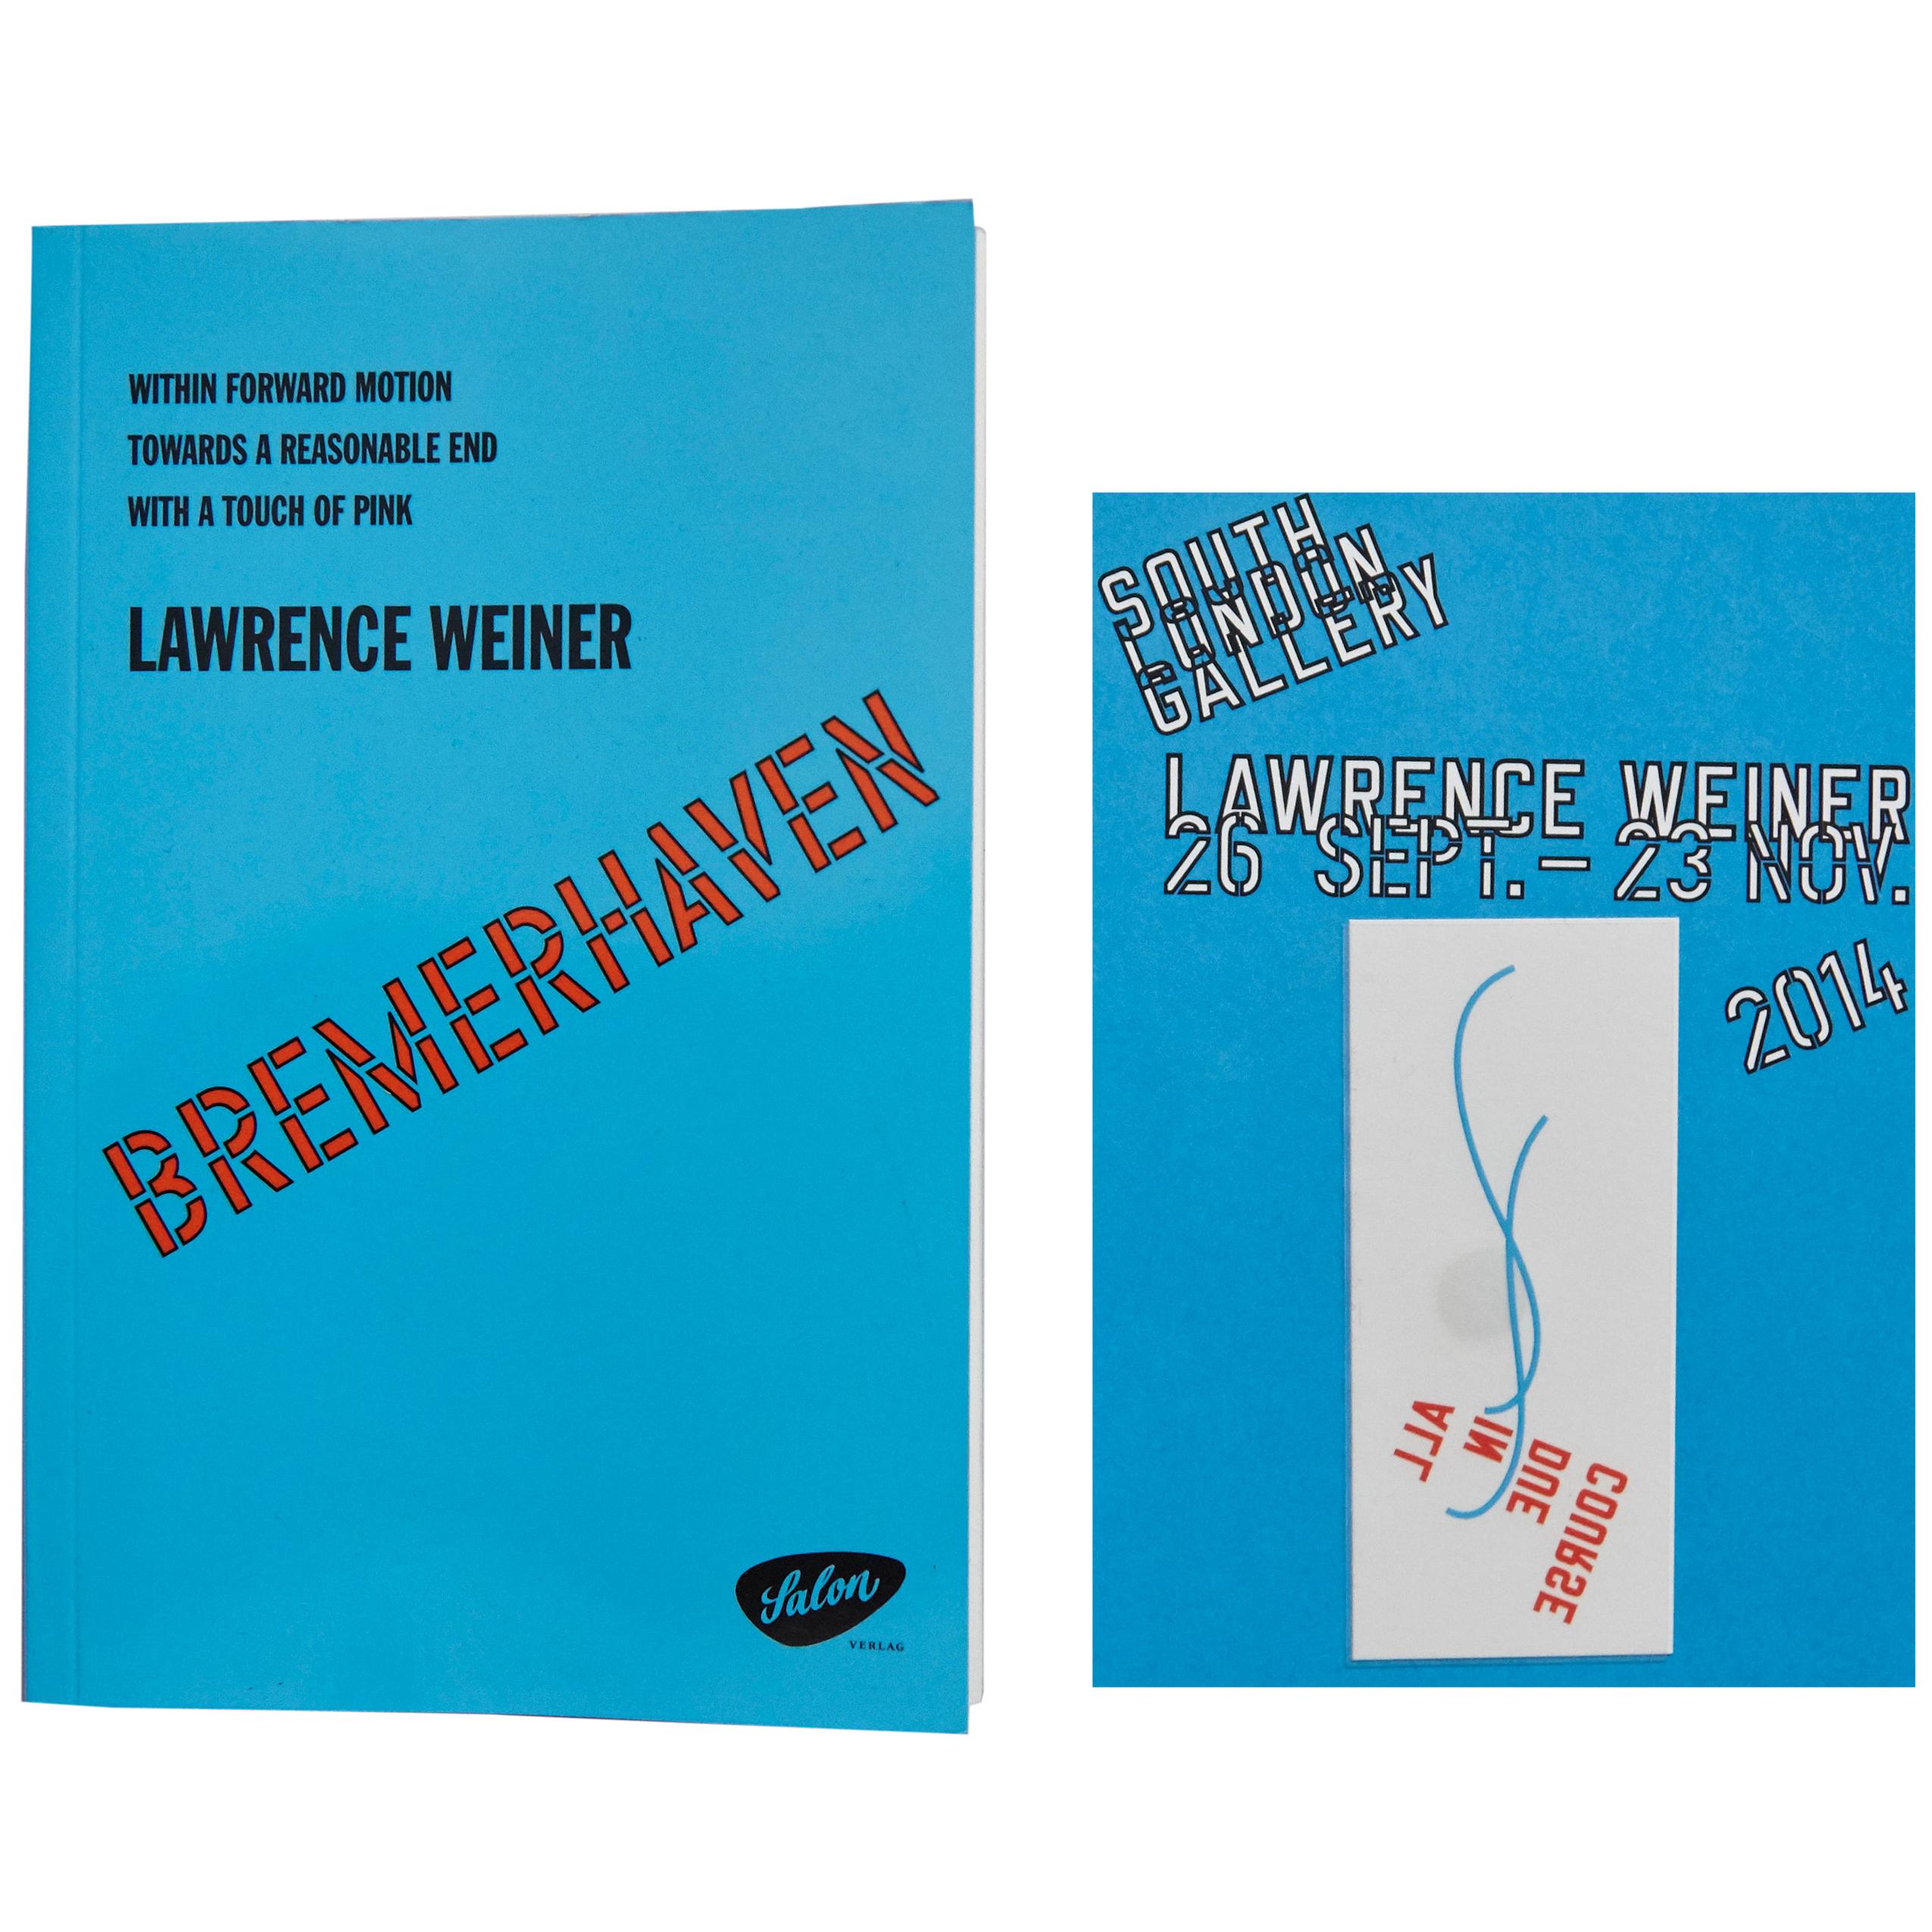 Lawrence Weiner, Buch und Tattoo in limitierter Auflage, South London Gallery, 2014